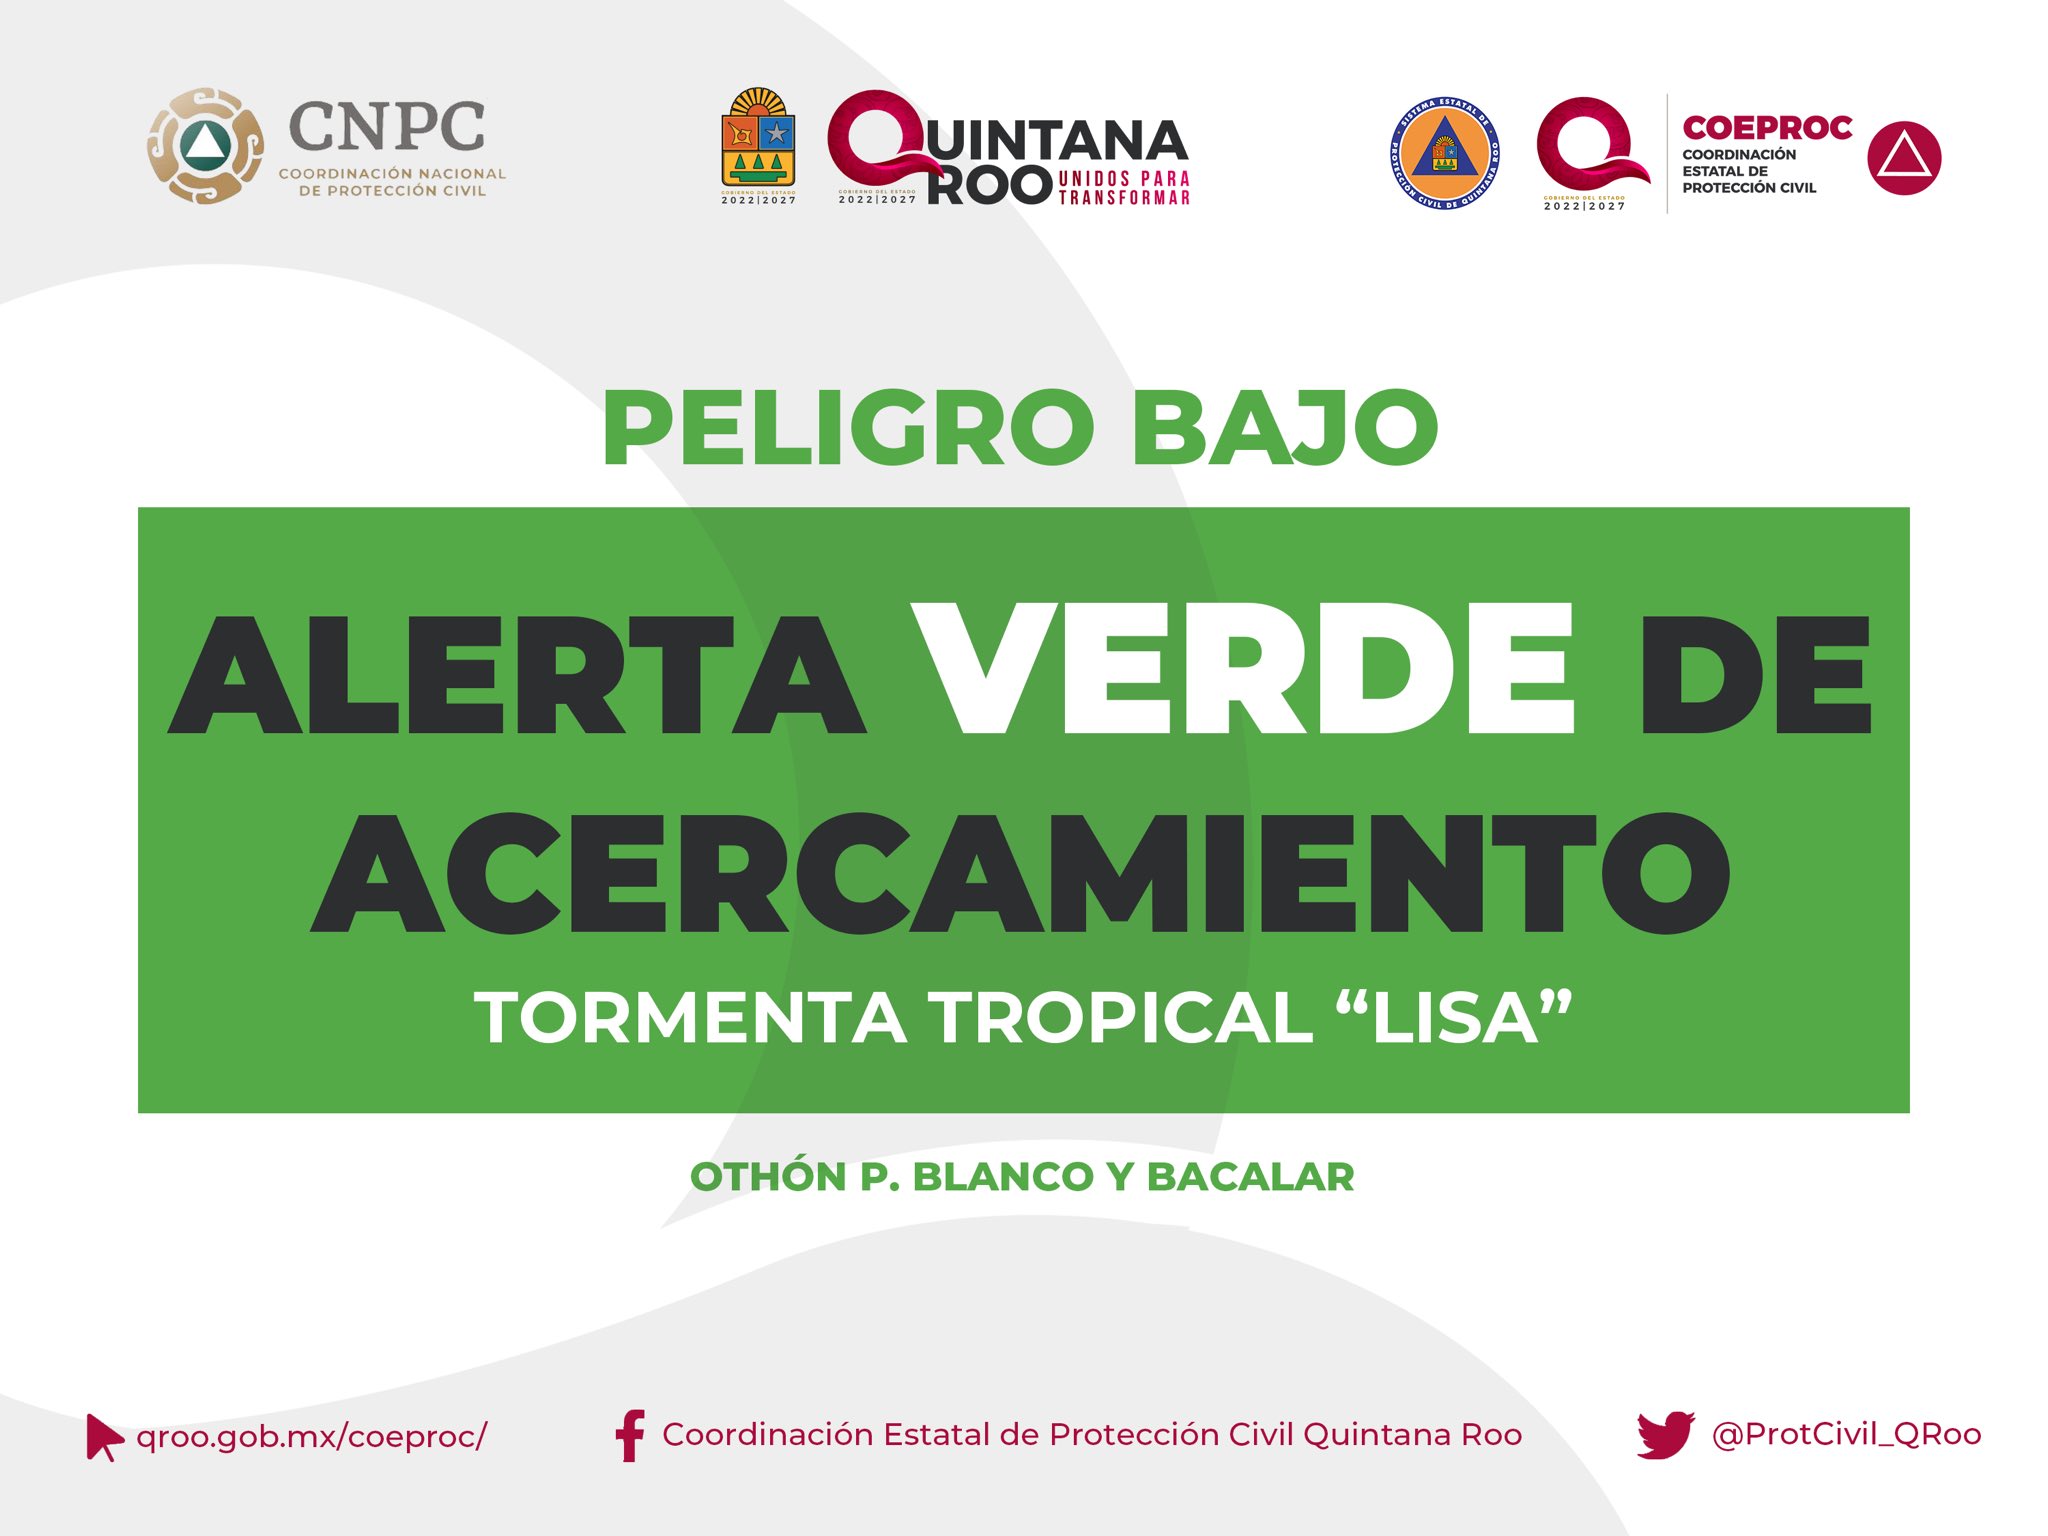 El gobierno de Quintana Roo emitió alerta verde para los municipios de Bacalar y Othón P. Blanco.